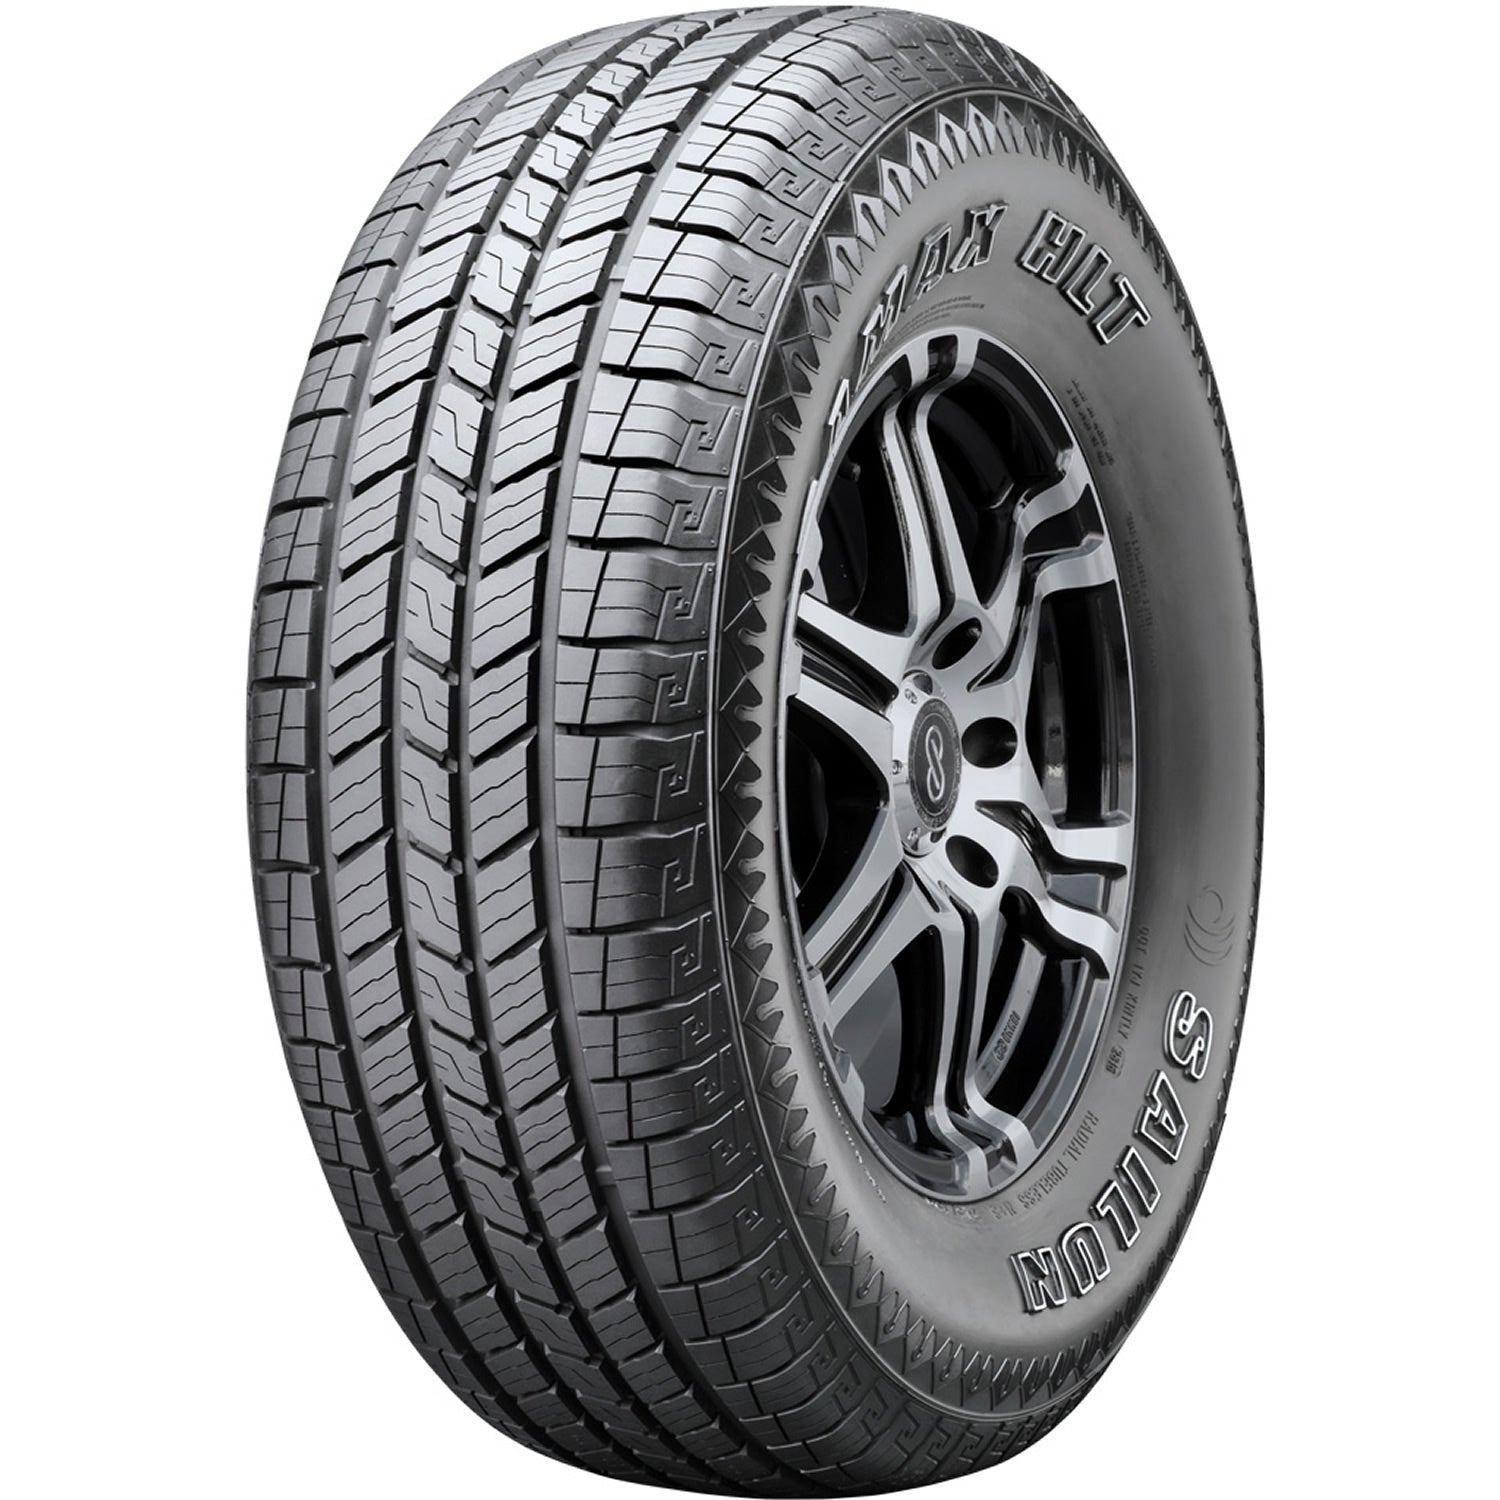 SAILUN TERRAMAX HLT LT235/85R16 (31.7X9.3R 16) Tires